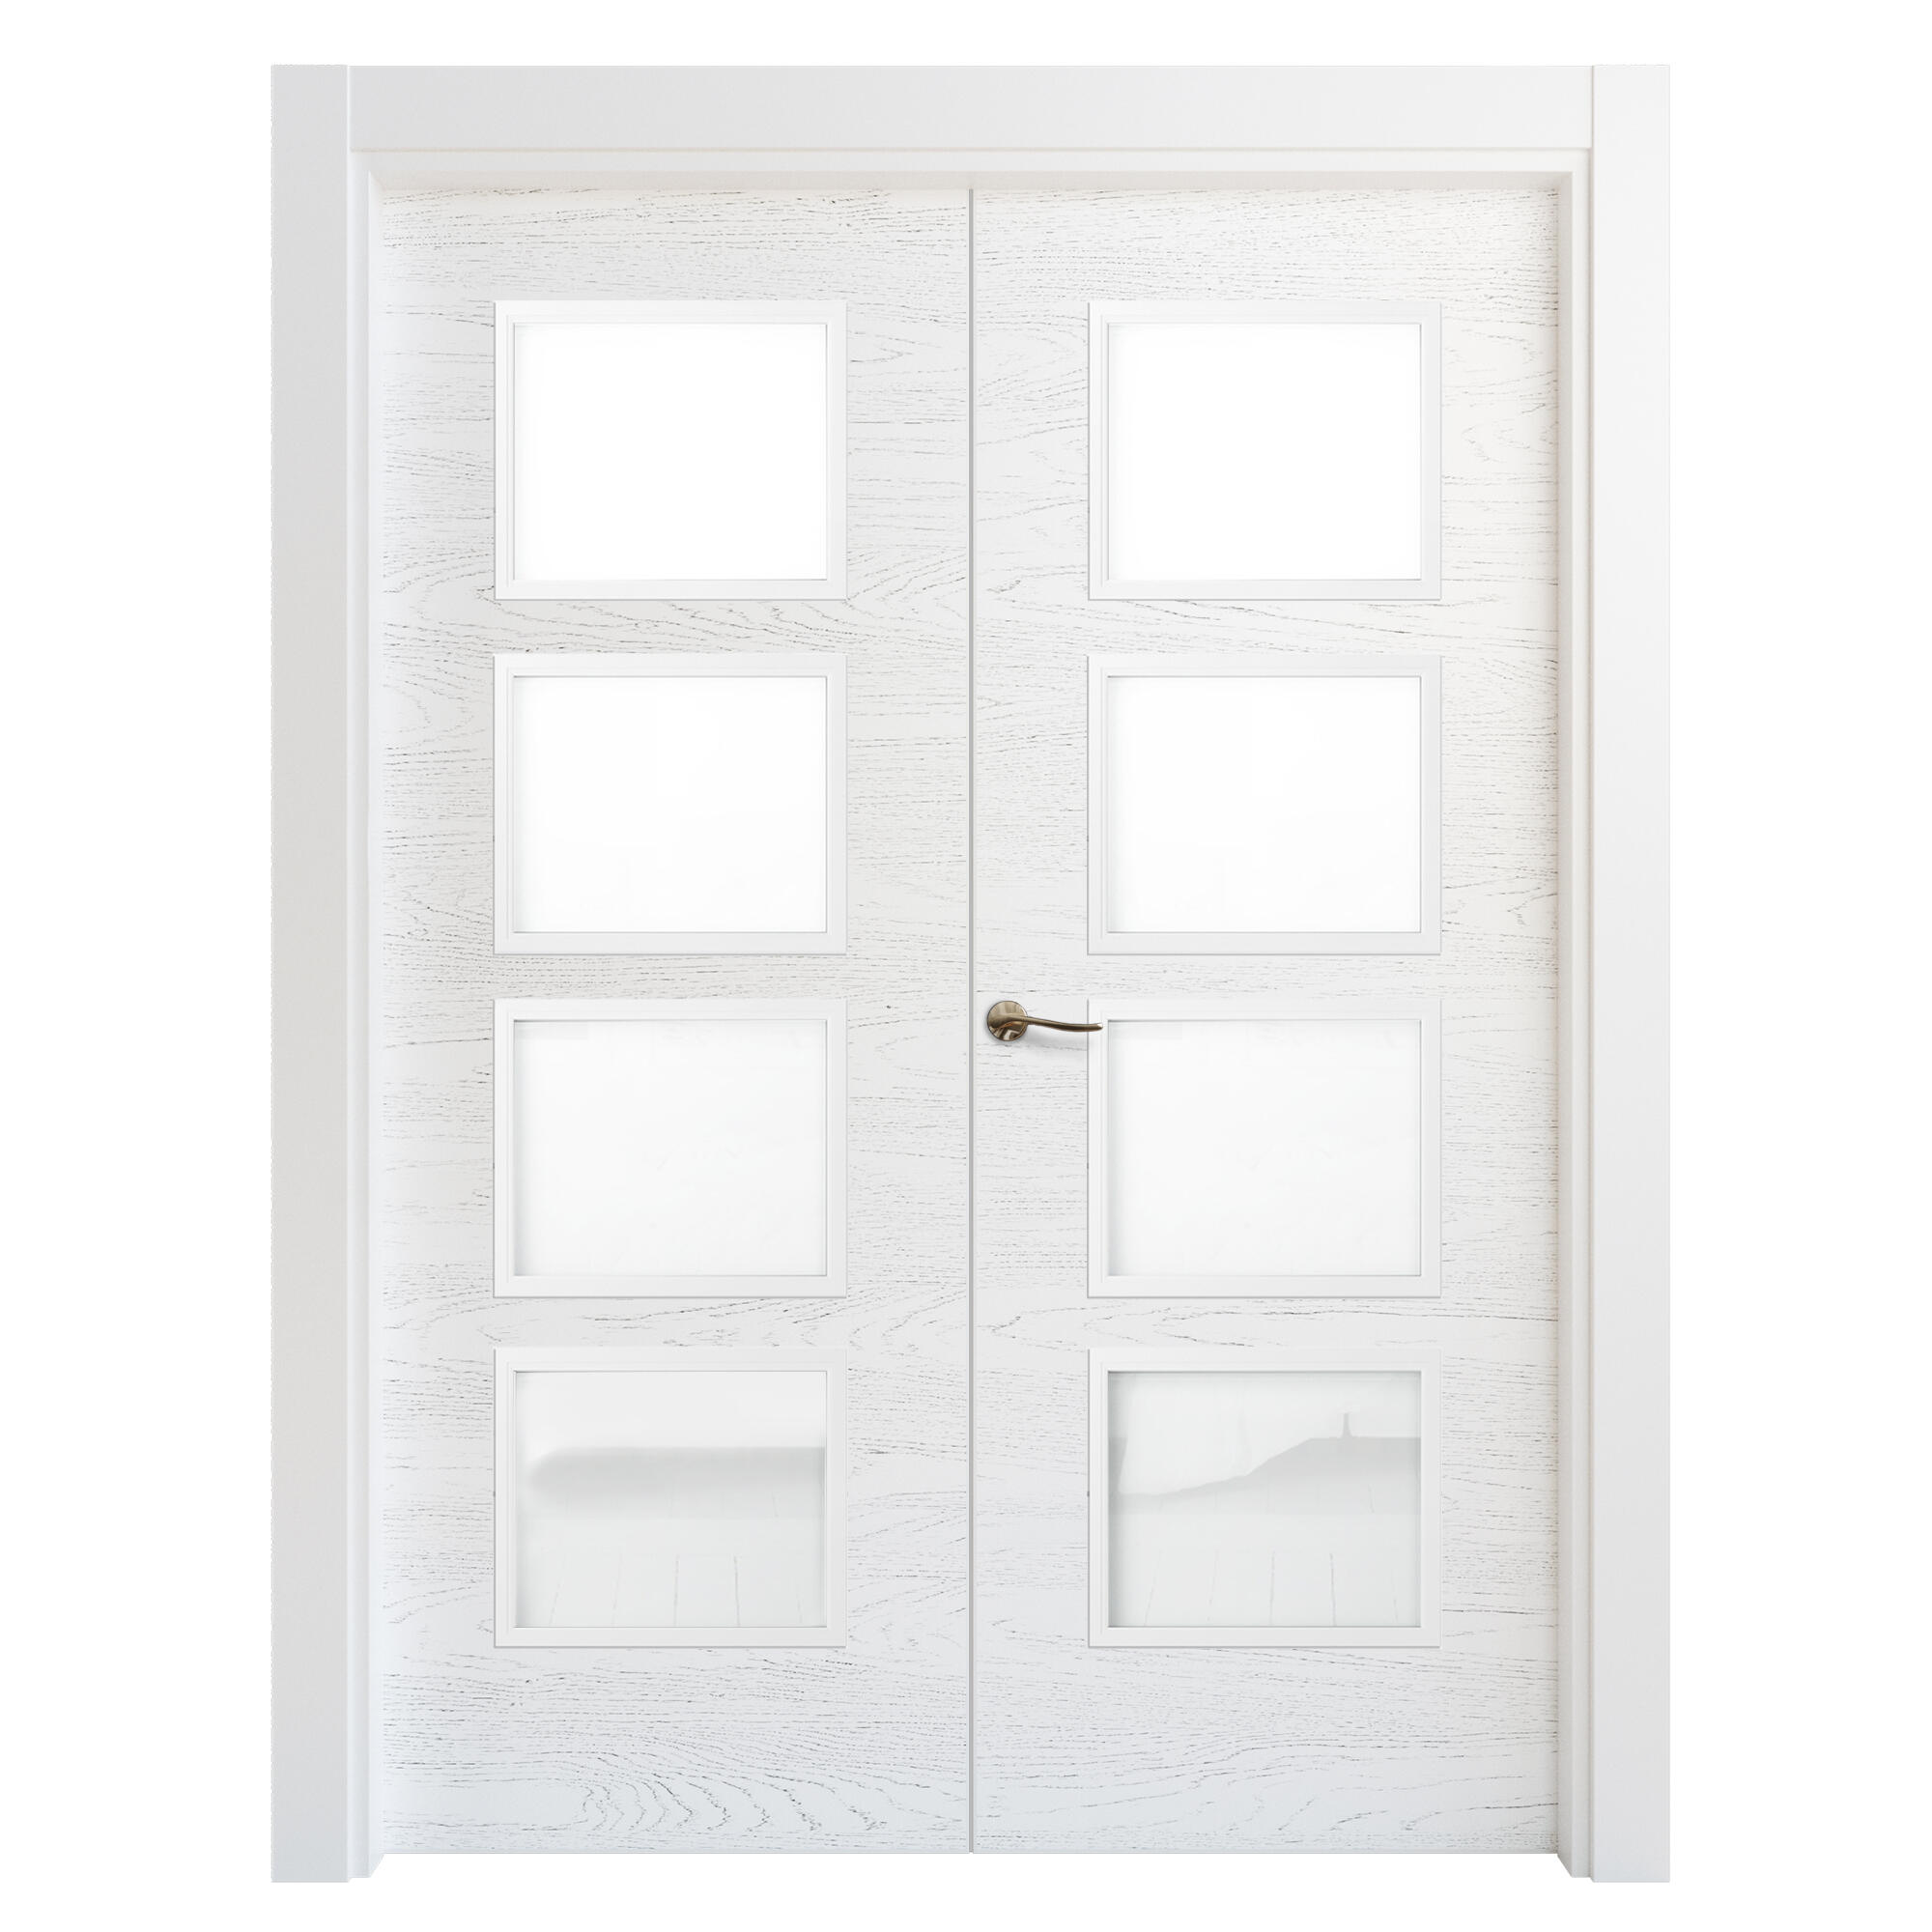 Puerta doble acristalada bari premium blanco i 9x105 cm